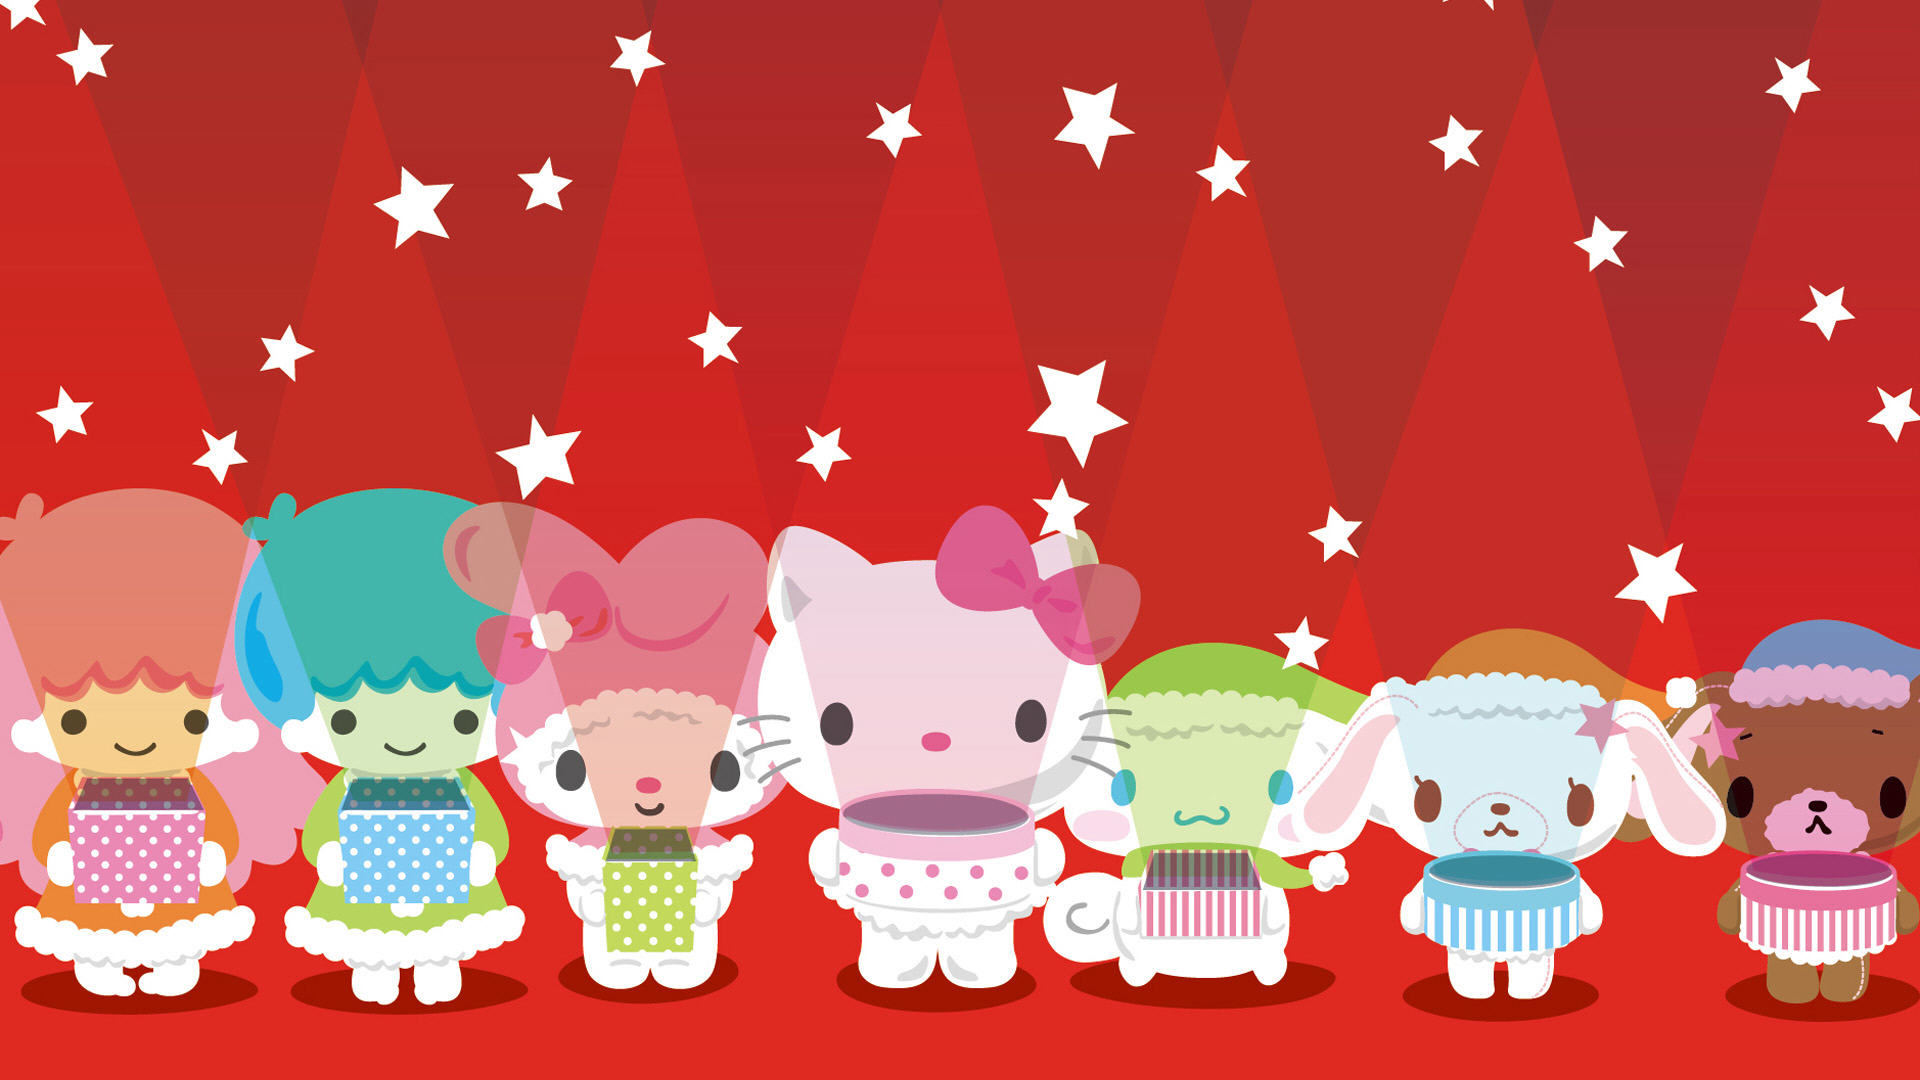 Hello Kitty Christmas: Chào mừng mùa Giáng sinh cùng với Hello Kitty và những người bạn đáng yêu! Một thế giới đầy màu sắc, ánh đèn lung linh và tràn đầy niềm vui hạnh phúc đang chờ đón bạn. Cùng khám phá loạt hình ảnh đáng yêu về Hello Kitty Christmas để cảm nhận không khí lễ hội tràn đầy sức sống. Hãy khám phá và tự tay tạo ra những điều thú vị nhất cho mùa Giáng sinh năm nay. Hello Kitty background: Bạn yêu thích sự đáng yêu và ngộ nghĩnh của Hello Kitty phải không nào? Bây giờ bạn hoàn toàn có thể sở hữu những hình nền Hello Kitty tuyệt vời nhất cho thiết bị của mình. Các chủ đề đa dạng, cùng với màu sắc tươi sáng và thiết kế độc đáo sẽ khiến cho bất cứ ai cũng phải yêu thích. Khám phá và lựa chọn một bức hình nền Hello Kitty ưng ý để làm trang trí tuyệt vời cho thiết bị của bạn. Free download: Tận hưởng niềm vui sở hữu hàng ngàn hình ảnh và tài nguyên độc đáo hoàn toàn miễn phí với chủ đề Hello Kitty. Bạn sẽ không cần phải tốn bất kỳ chi phí nào để truy cập và tải về những tài nguyên đặc biệt như hình ảnh, trò chơi và hơn thế nữa. Hãy truy cập ngay để tận hưởng những trải nghiệm thú vị và sáng tạo cùng với Hello Kitty.